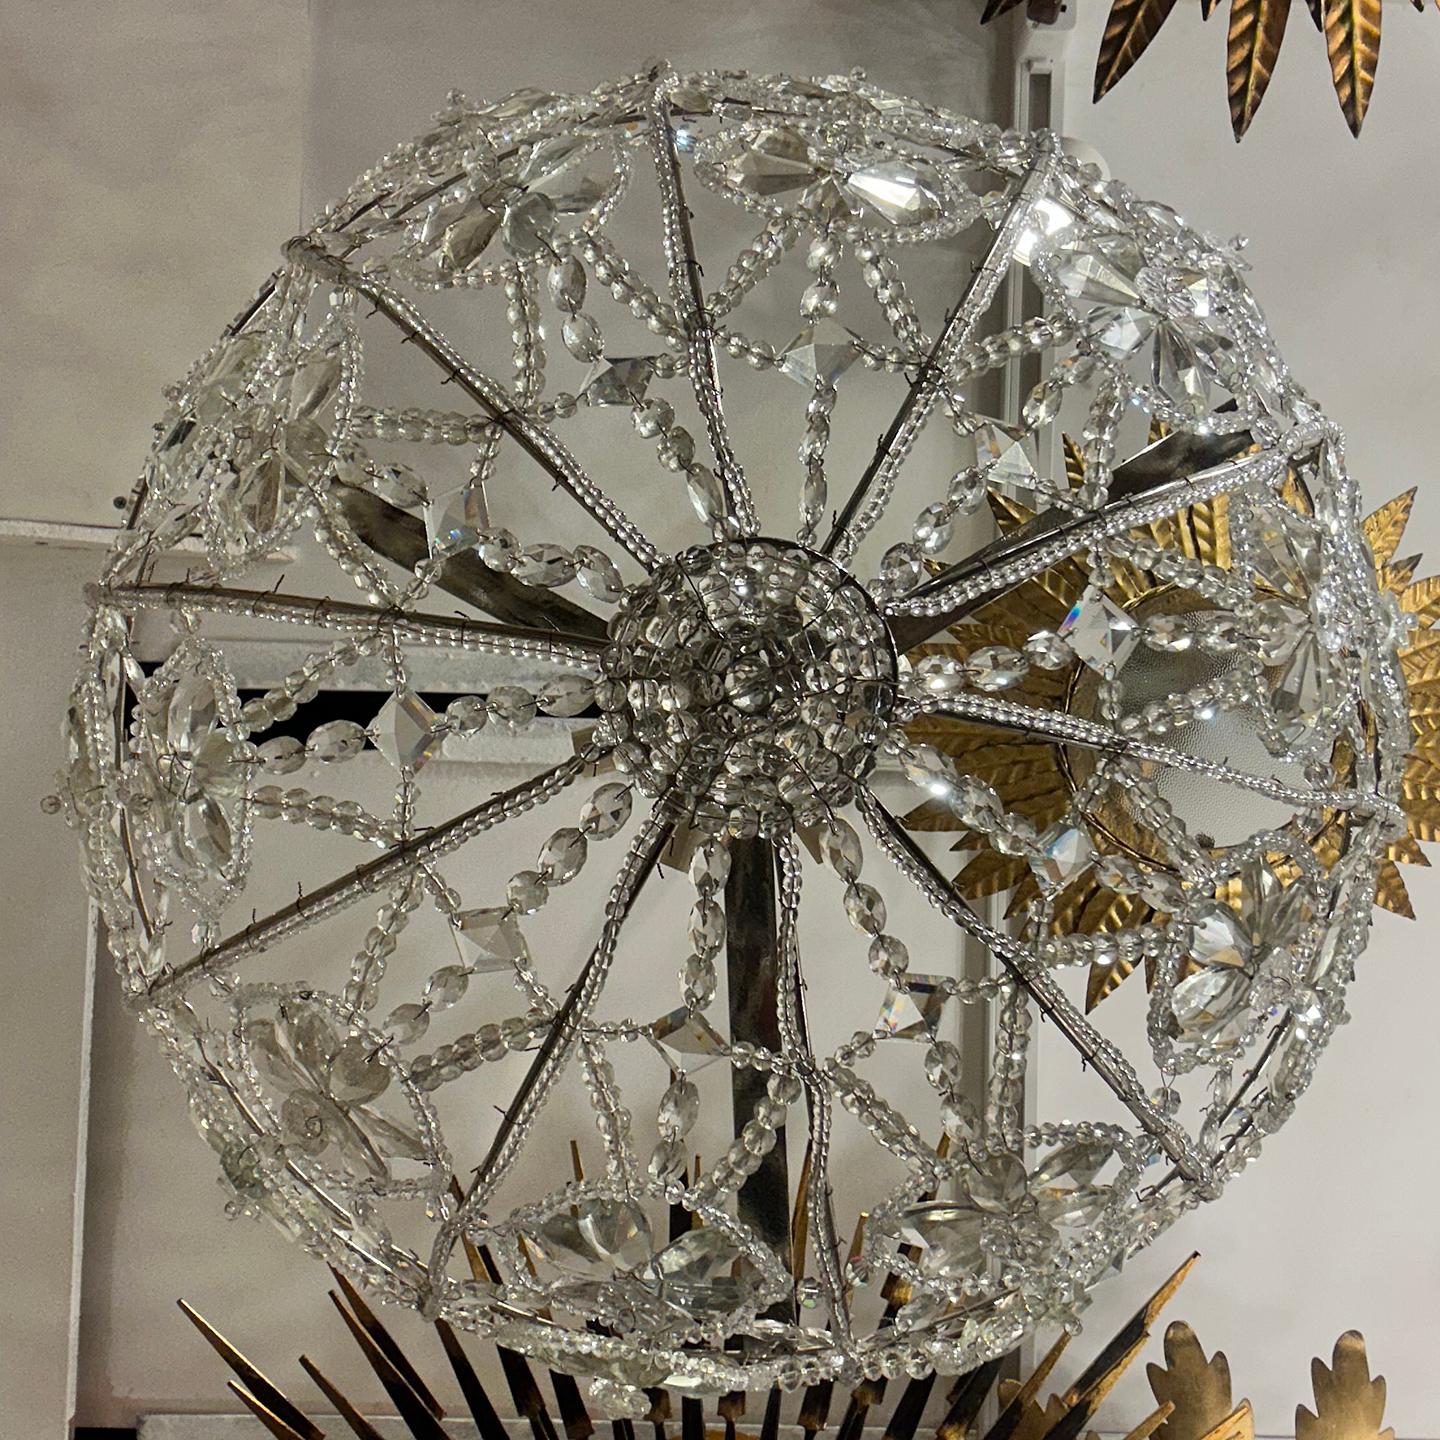 Un grand plafonnier français des années 1930 en cristal tressé, avec un corps tressé formant des fleurs et un cadre perlé, et six lampes candélabres à l'intérieur.

Mesures :
Diamètre : 24